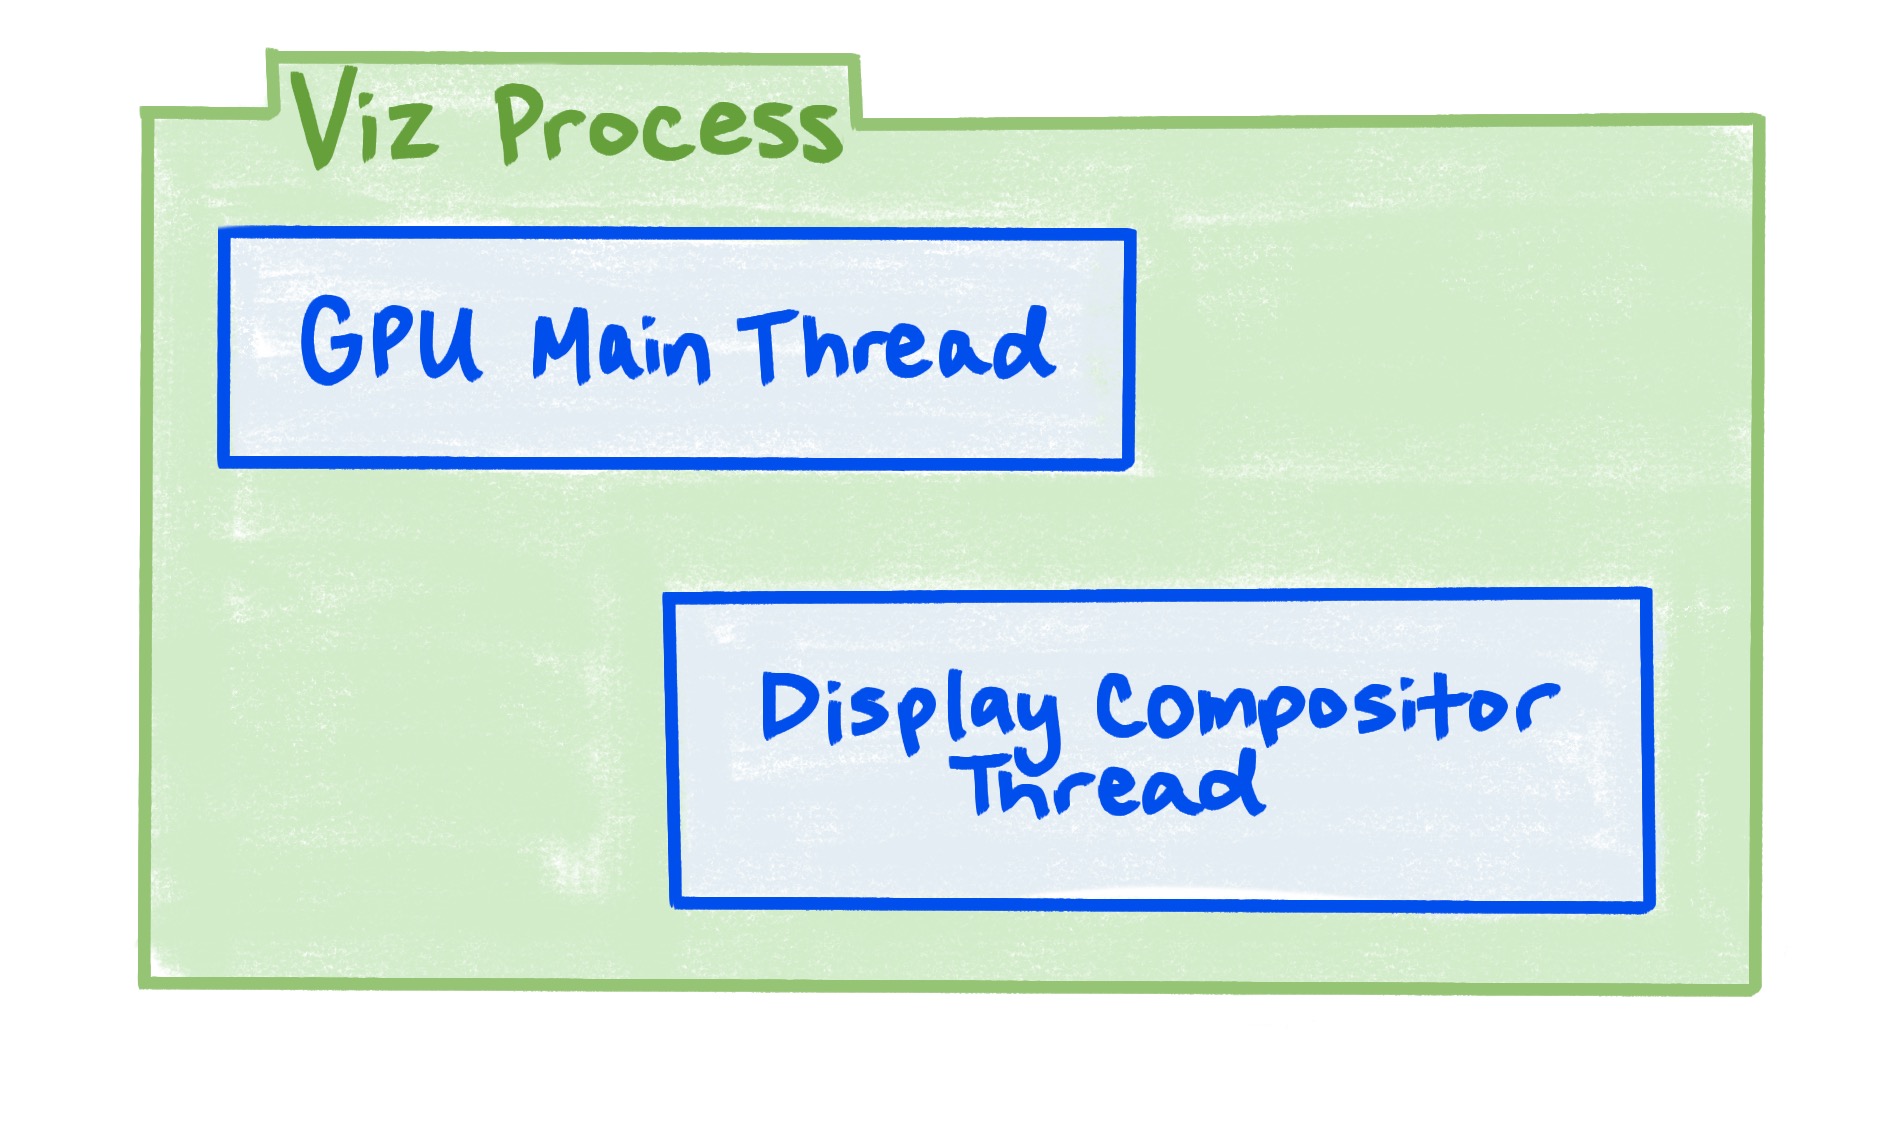 نموداری که نشان می دهد فرآیند Viz شامل رشته اصلی GPU و رشته ترکیب کننده نمایشگر است.